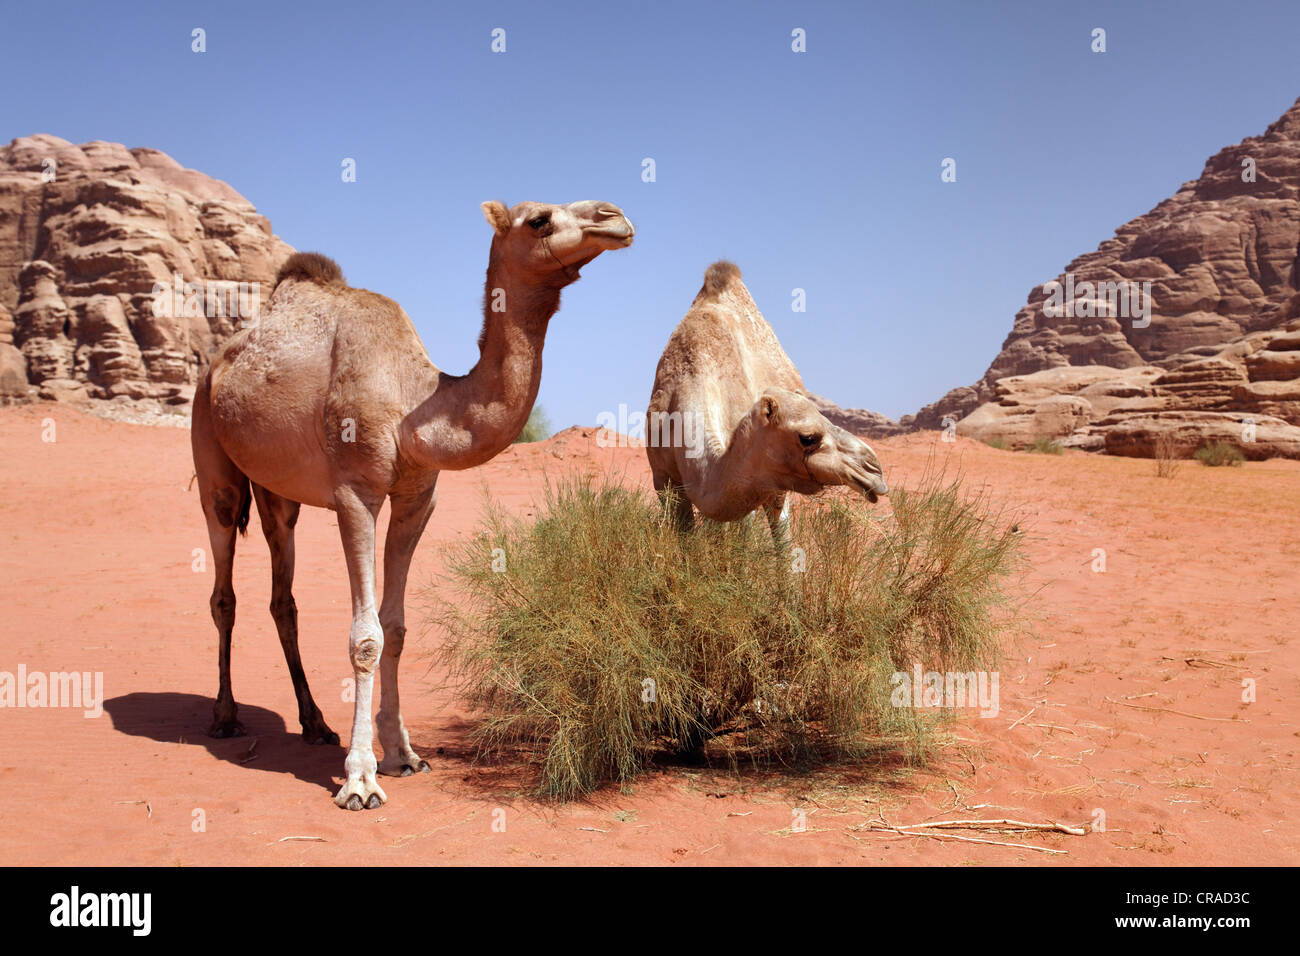 Dromedari o cammelli arabe (Camelus dromedarius) alimentazione su una boccola nel deserto con la sabbia rossa, Wadi Rum Foto Stock